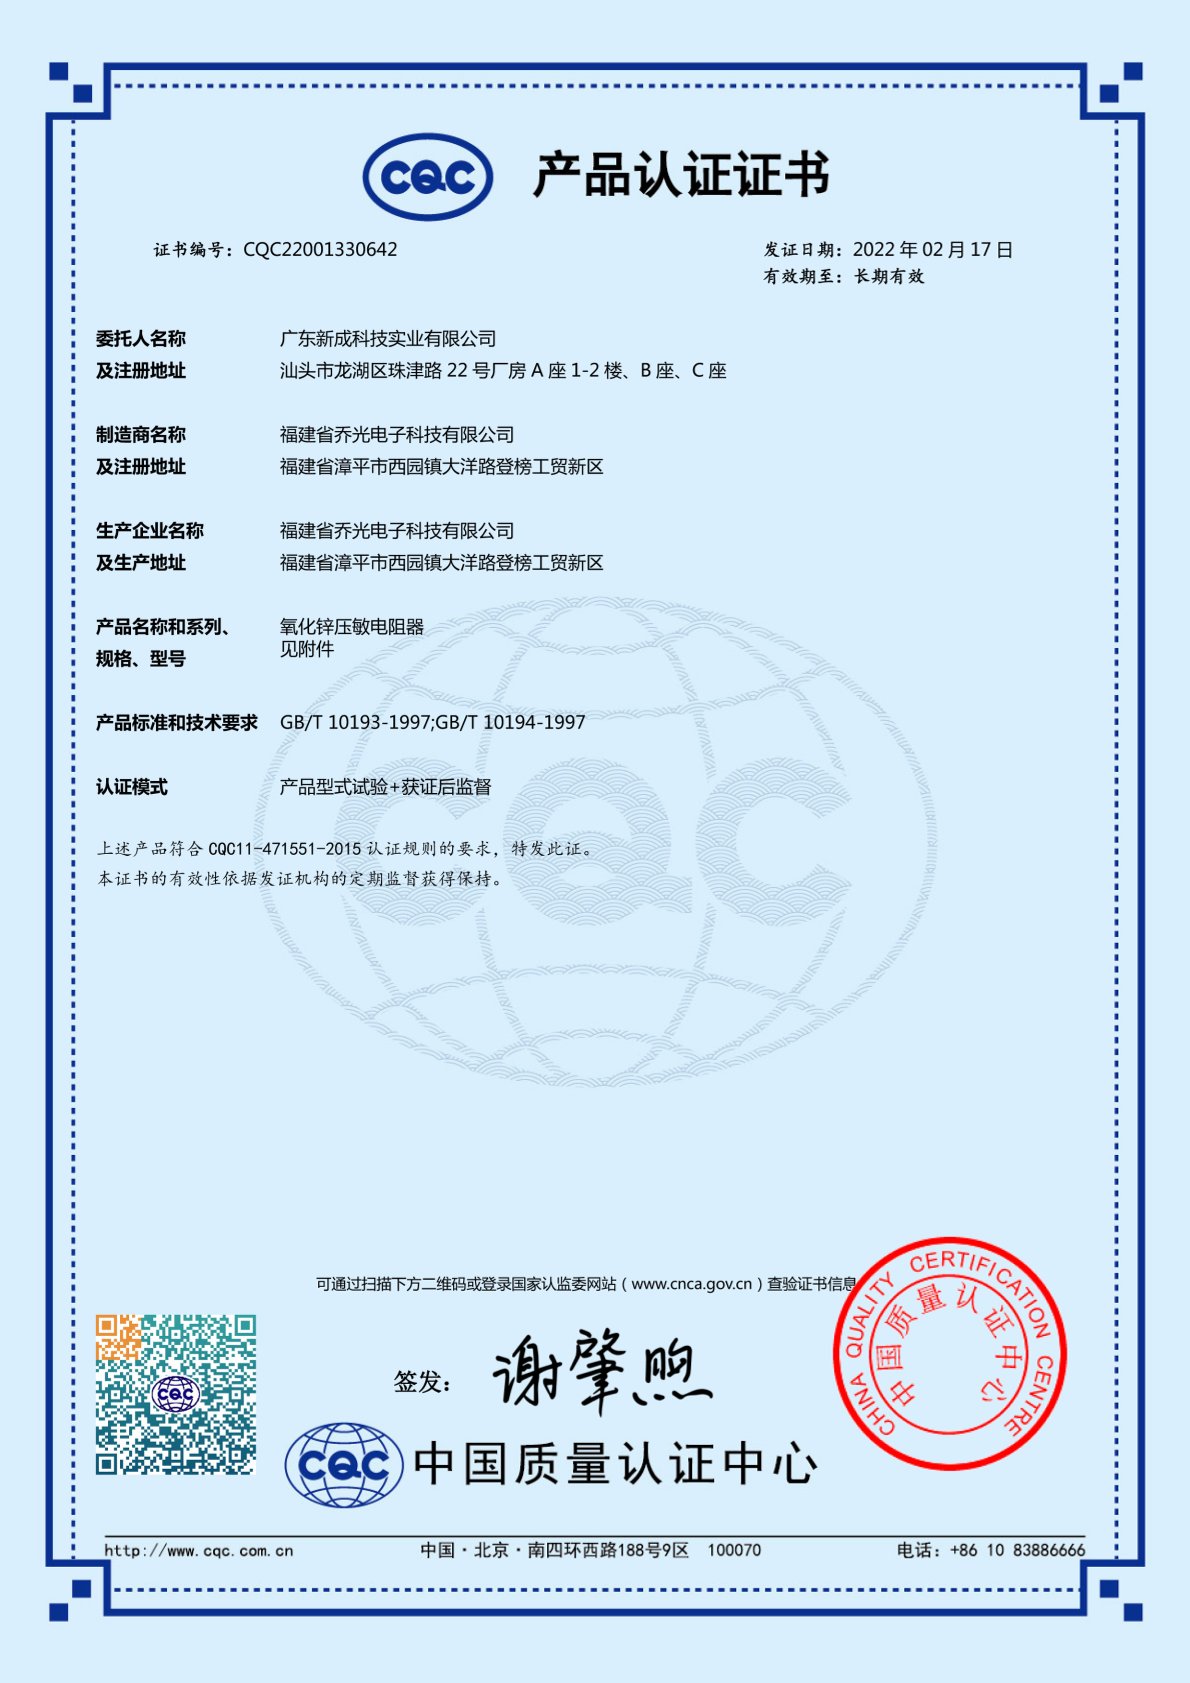  Varistor Certification 1 